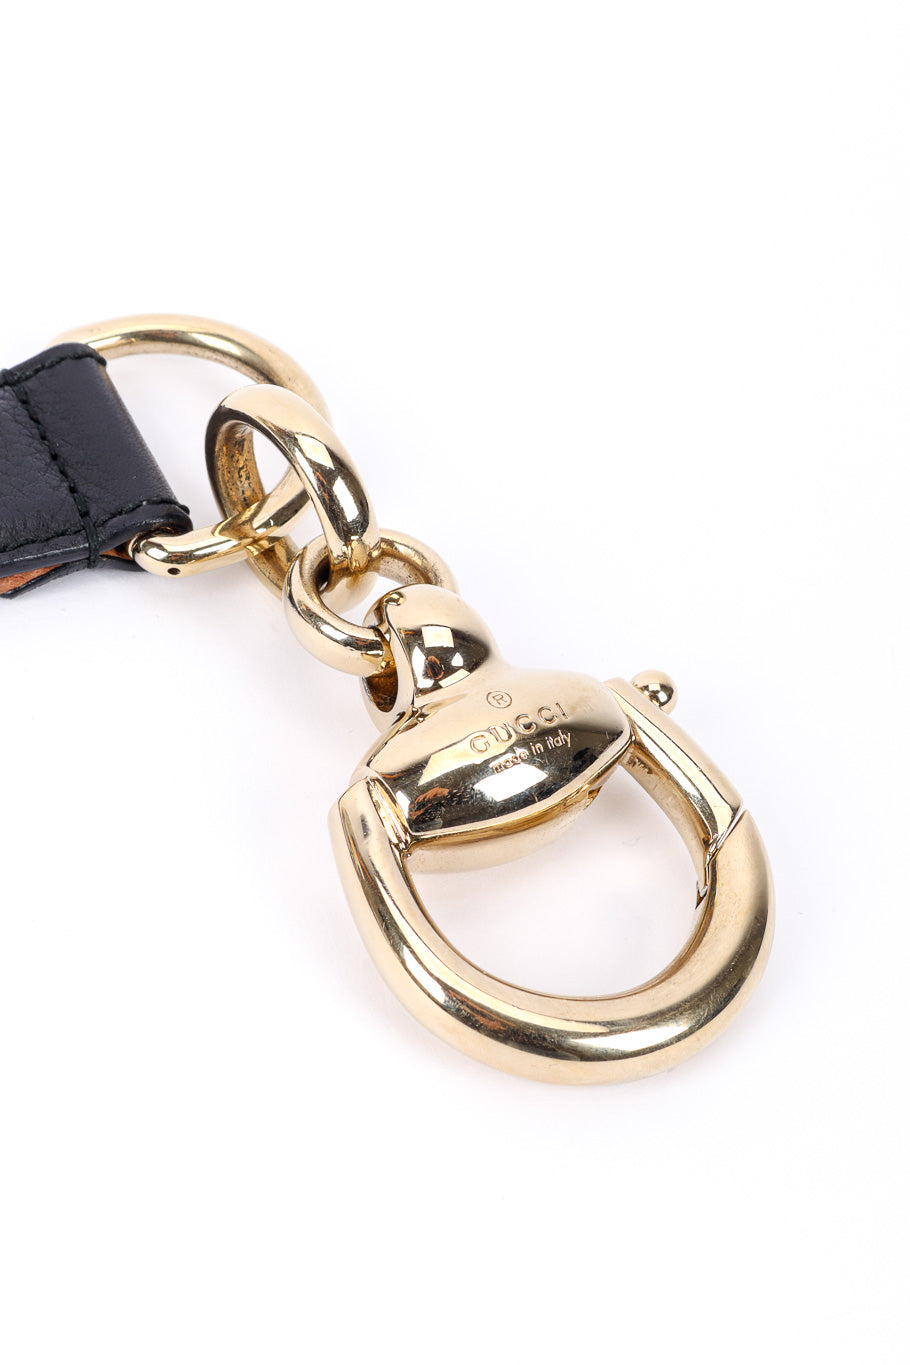 Gucci Horsebit Tassel Belt horsebit clasp closeup @recessla